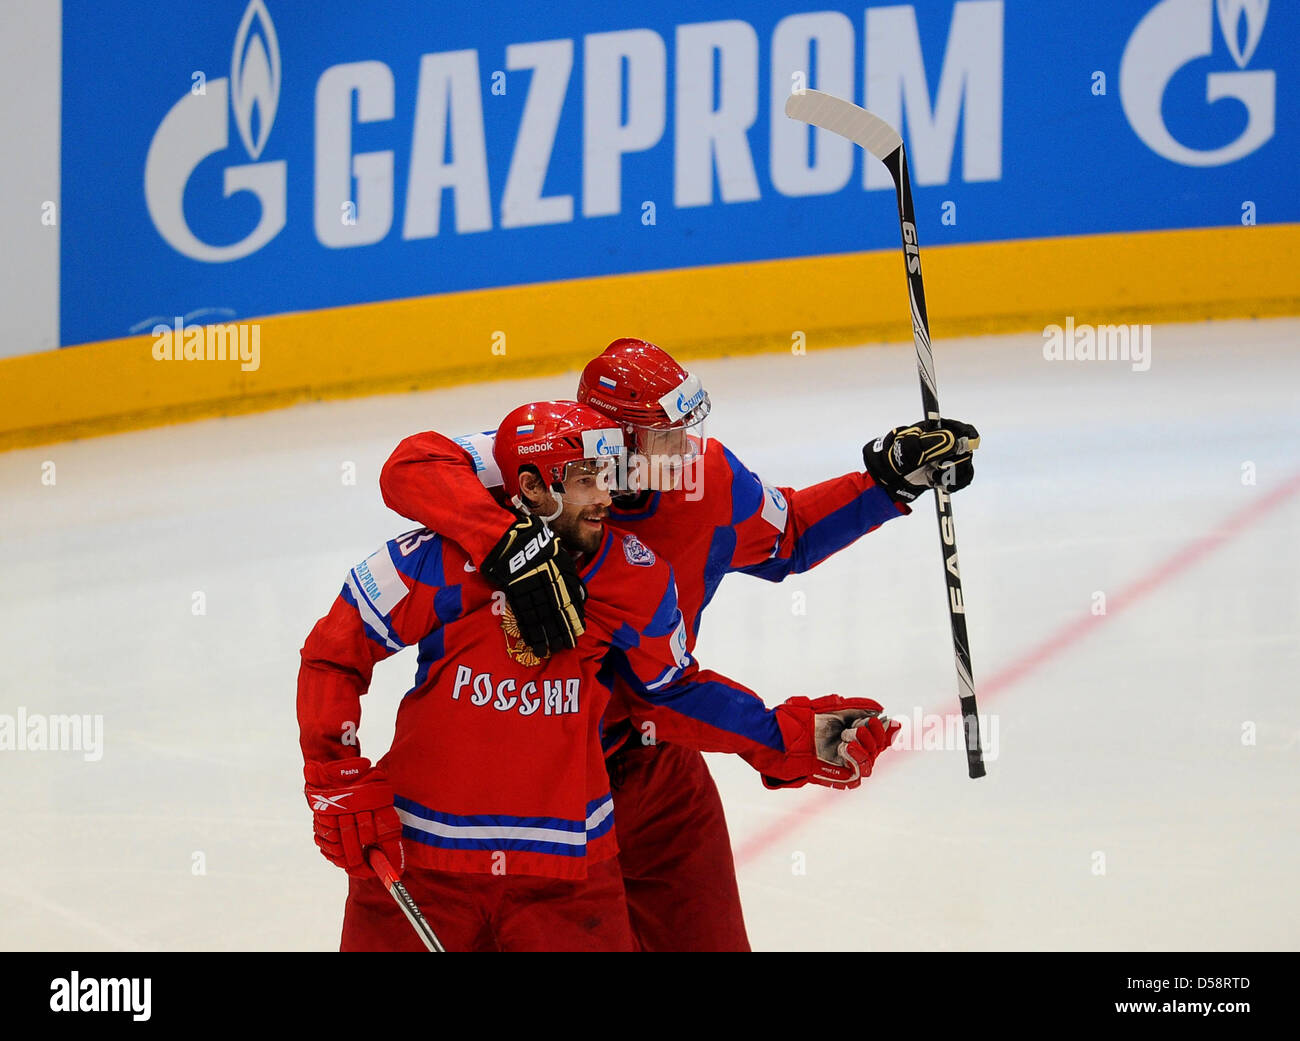 IIHF - Datsyuk's coming home!